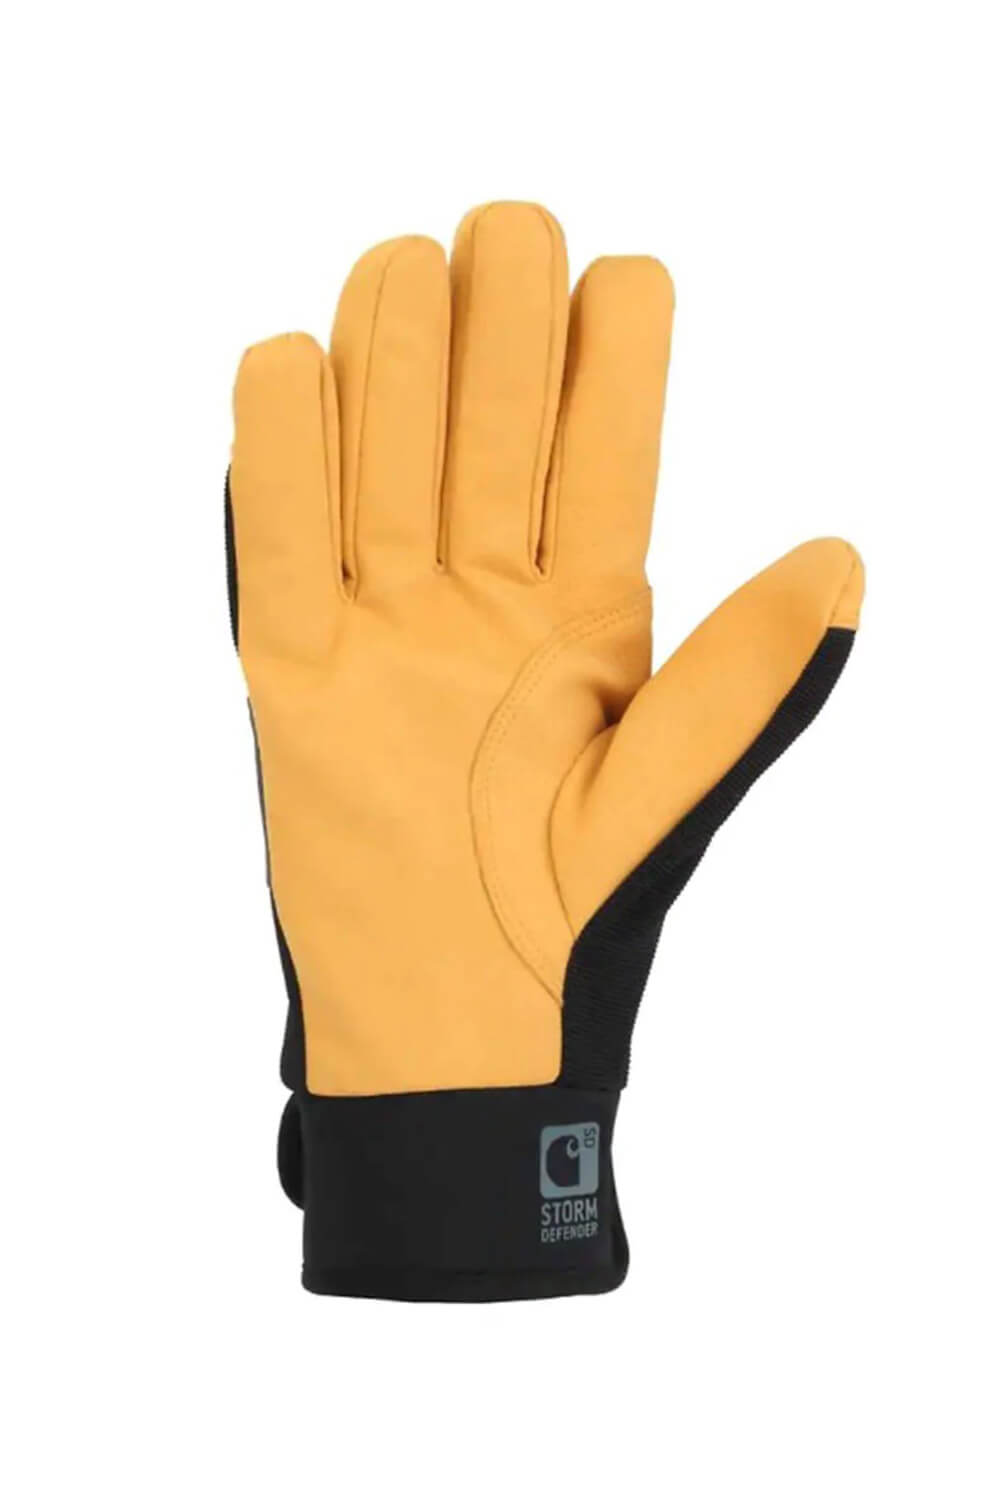 https://www.gliks.com/cdn/shop/files/carhartt-gloves-men-storm-defender-grey-yellow-2.jpg?v=1695398751